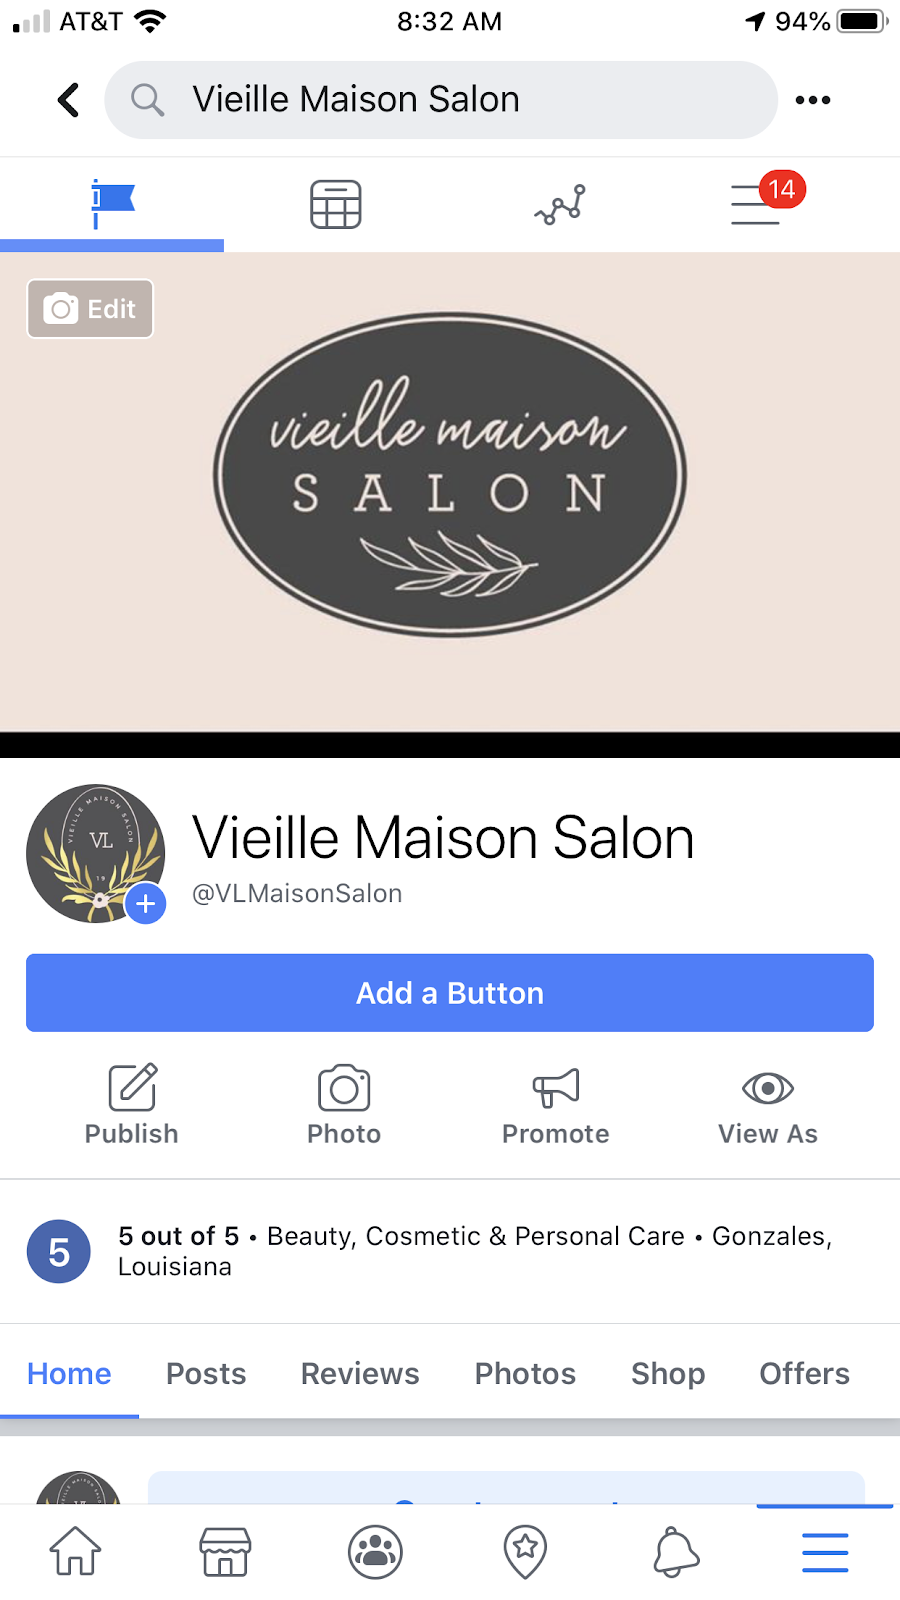 Vieille Maison Salon | 42195 LA-931, Gonzales, LA 70737 | Phone: (225) 622-9317